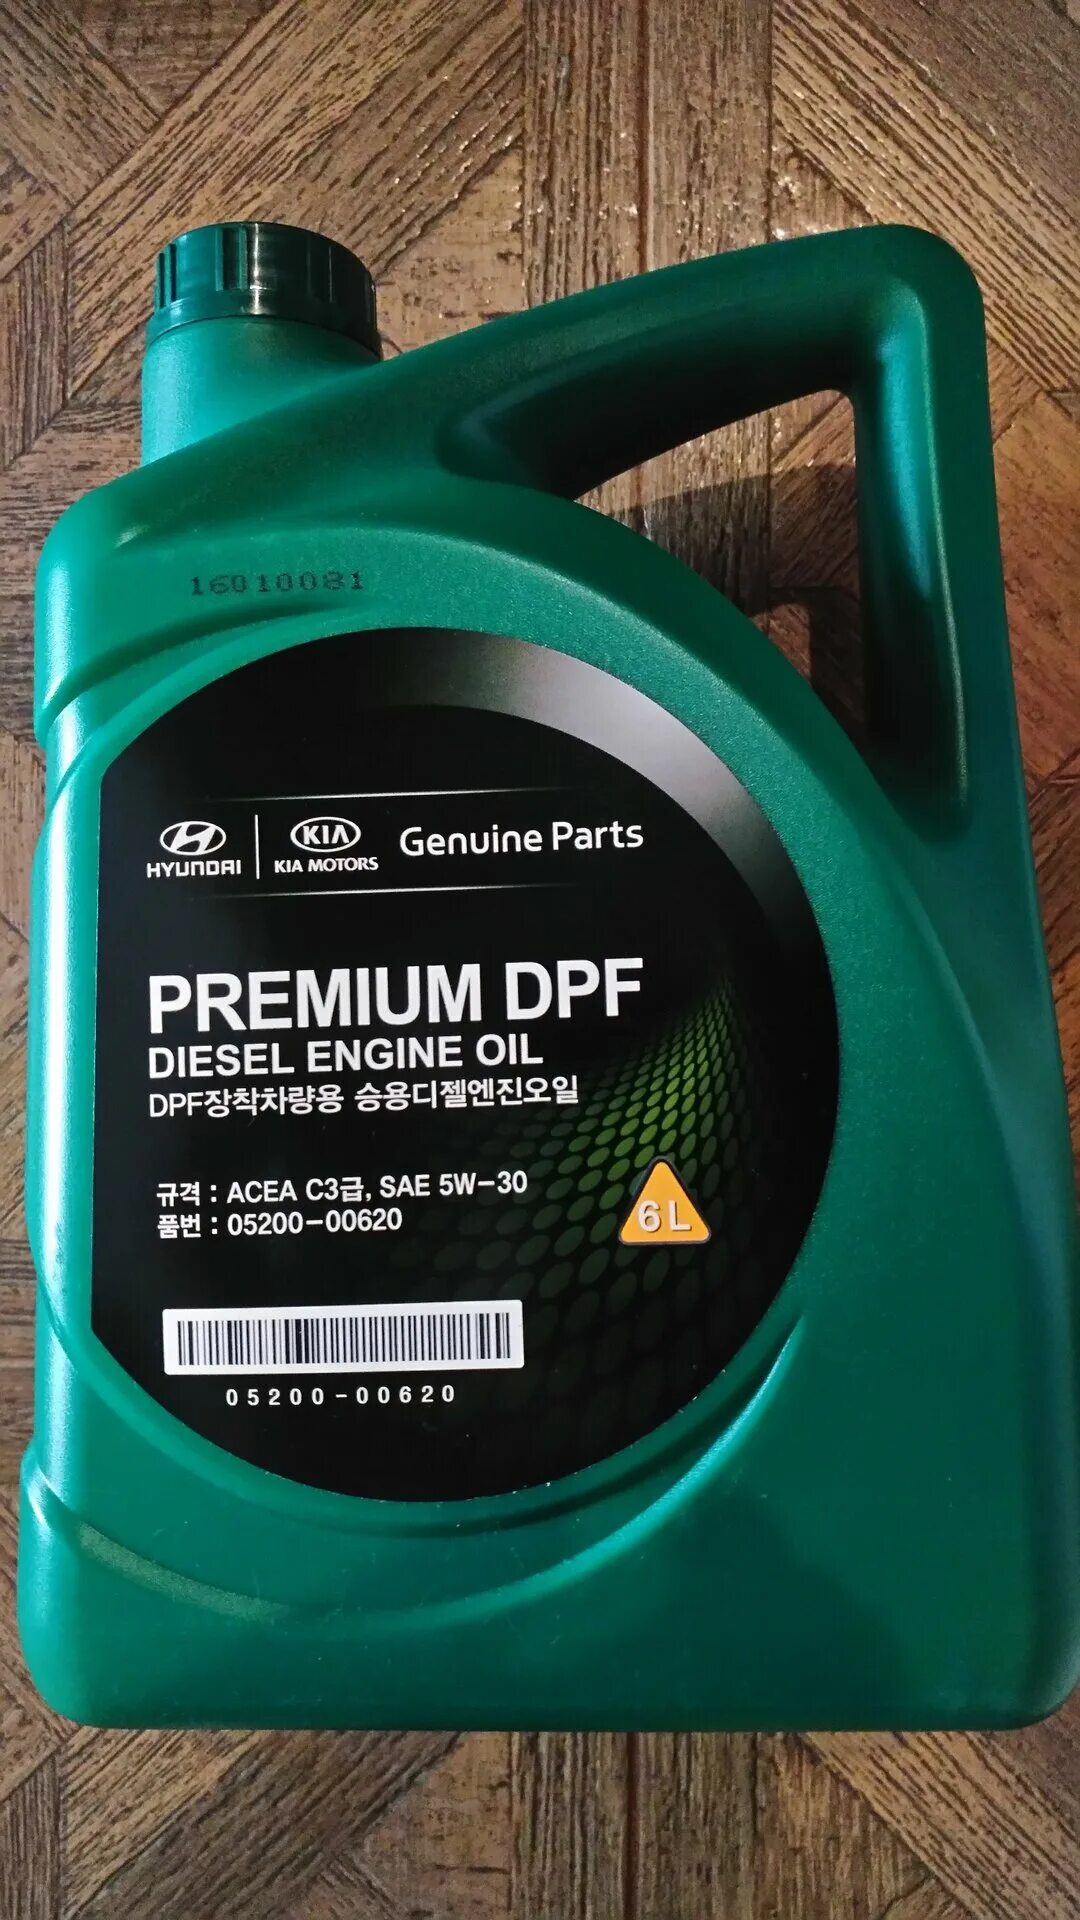 Premium DPF Diesel 5w-30. Масло mobis Premium DPF Diesel 5w-30. Hyundai Kia Premium DPF 5w-30 6 л. Mobis Premium DPF Diesel 5w-30, 6 n. Масло hyundai kia premium dpf